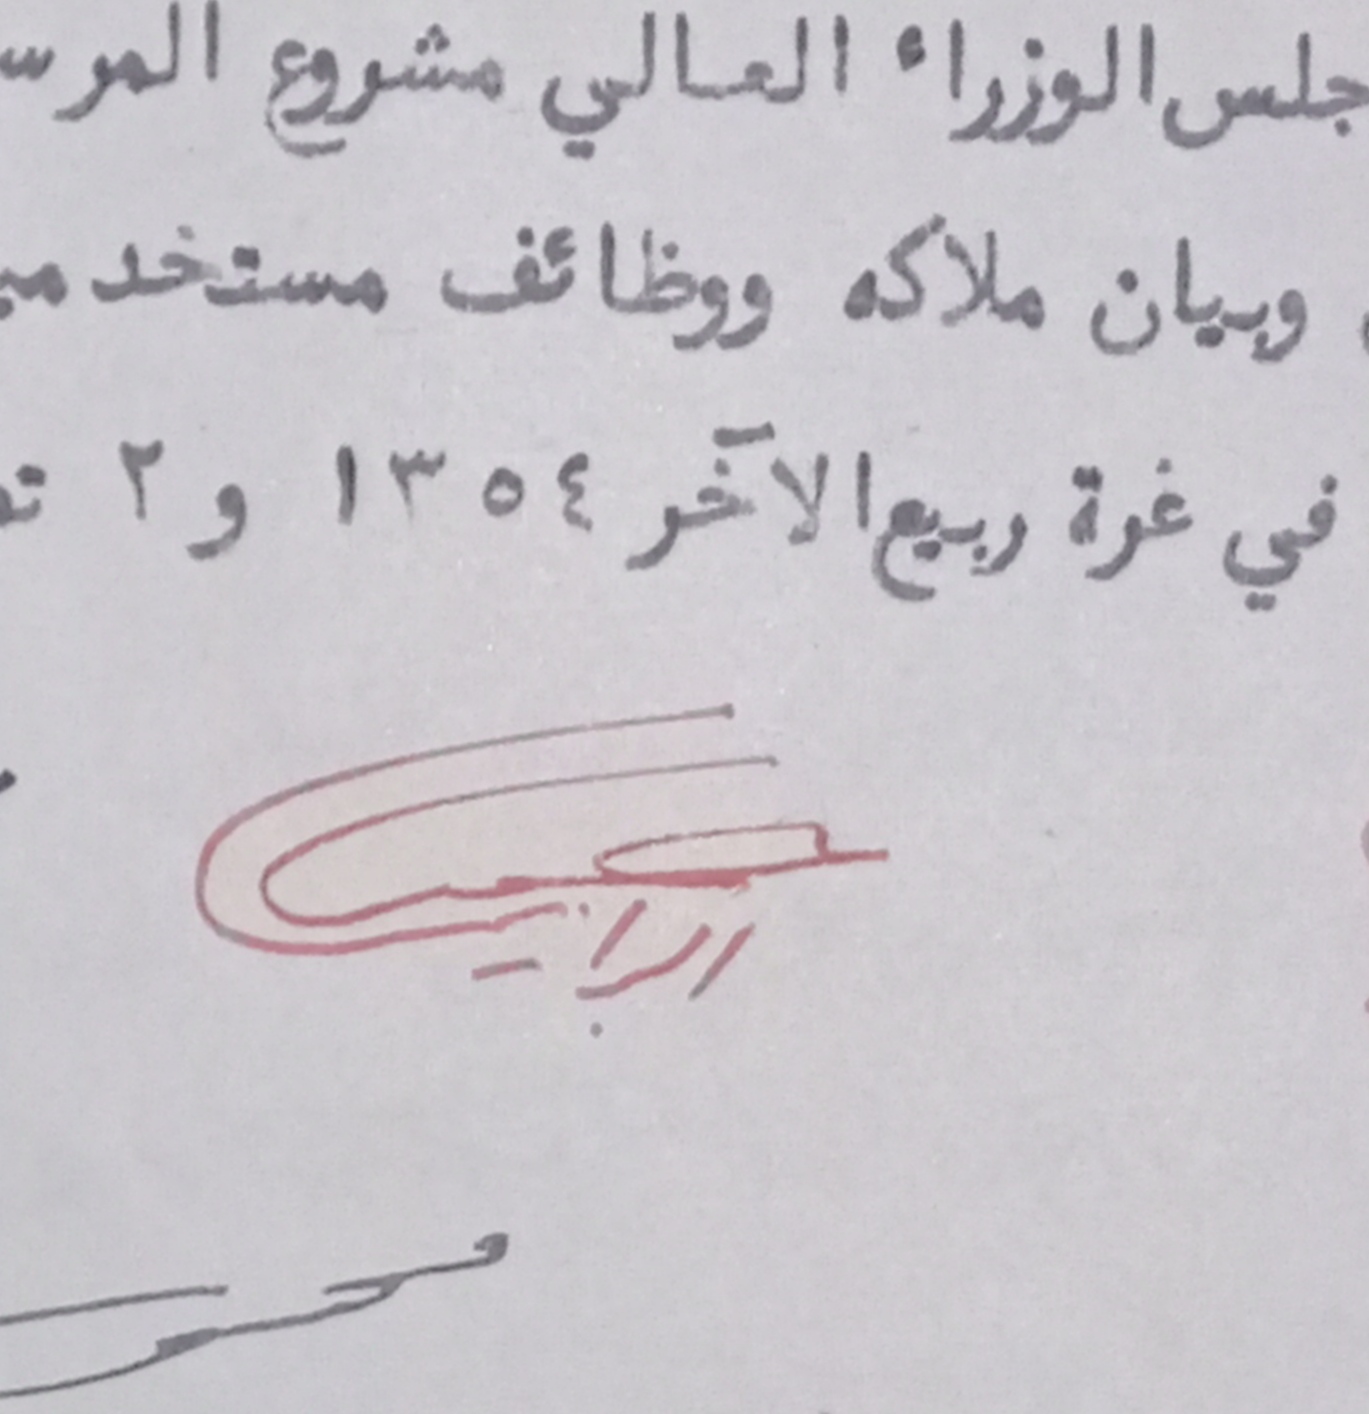 التاريخ السوري المعاصر - توقيع حسني البرازي وزير المعارف في سورية عام 1935